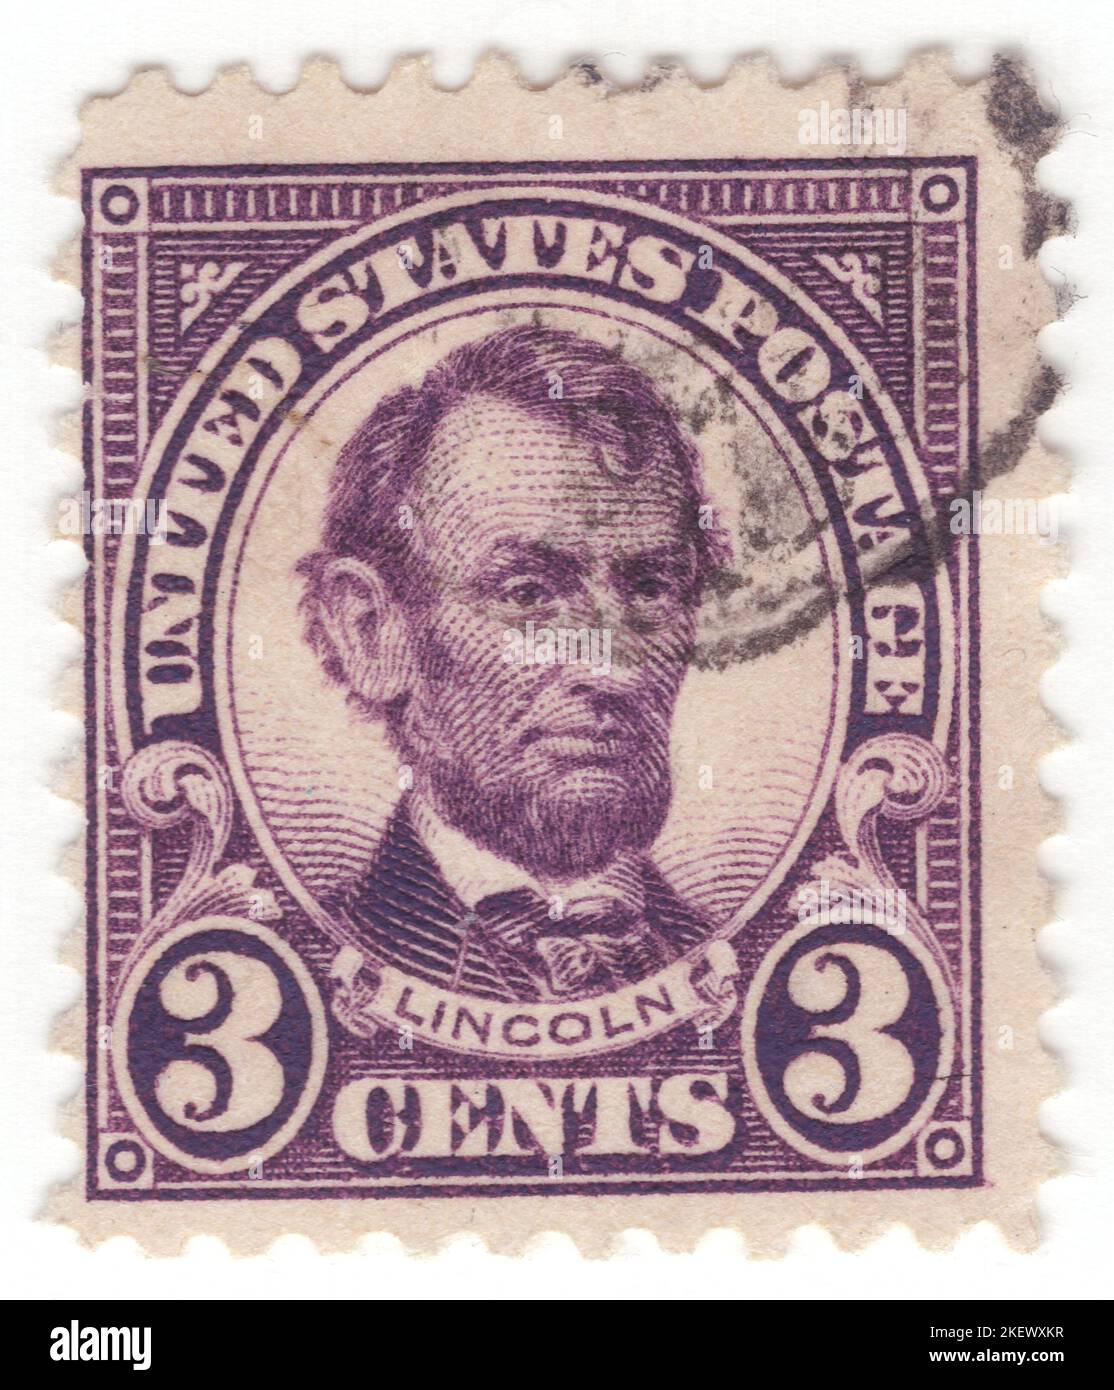 USA - 1923: Eine 3 Cent violette Briefmarke, die das Porträt von Abraham Lincoln darstellt. Amerikanischer Anwalt und Staatsmann, der von 1861 bis zu seiner Tötung im Jahr 1865 als Präsident der Vereinigten Staaten von 16. diente. Lincoln führte die Nation durch den amerikanischen Bürgerkrieg und gelang es, die Union zu erhalten, die Sklaverei abzuschaffen, die Bundesregierung zu stärken und die US-Wirtschaft zu modernisieren Stockfoto